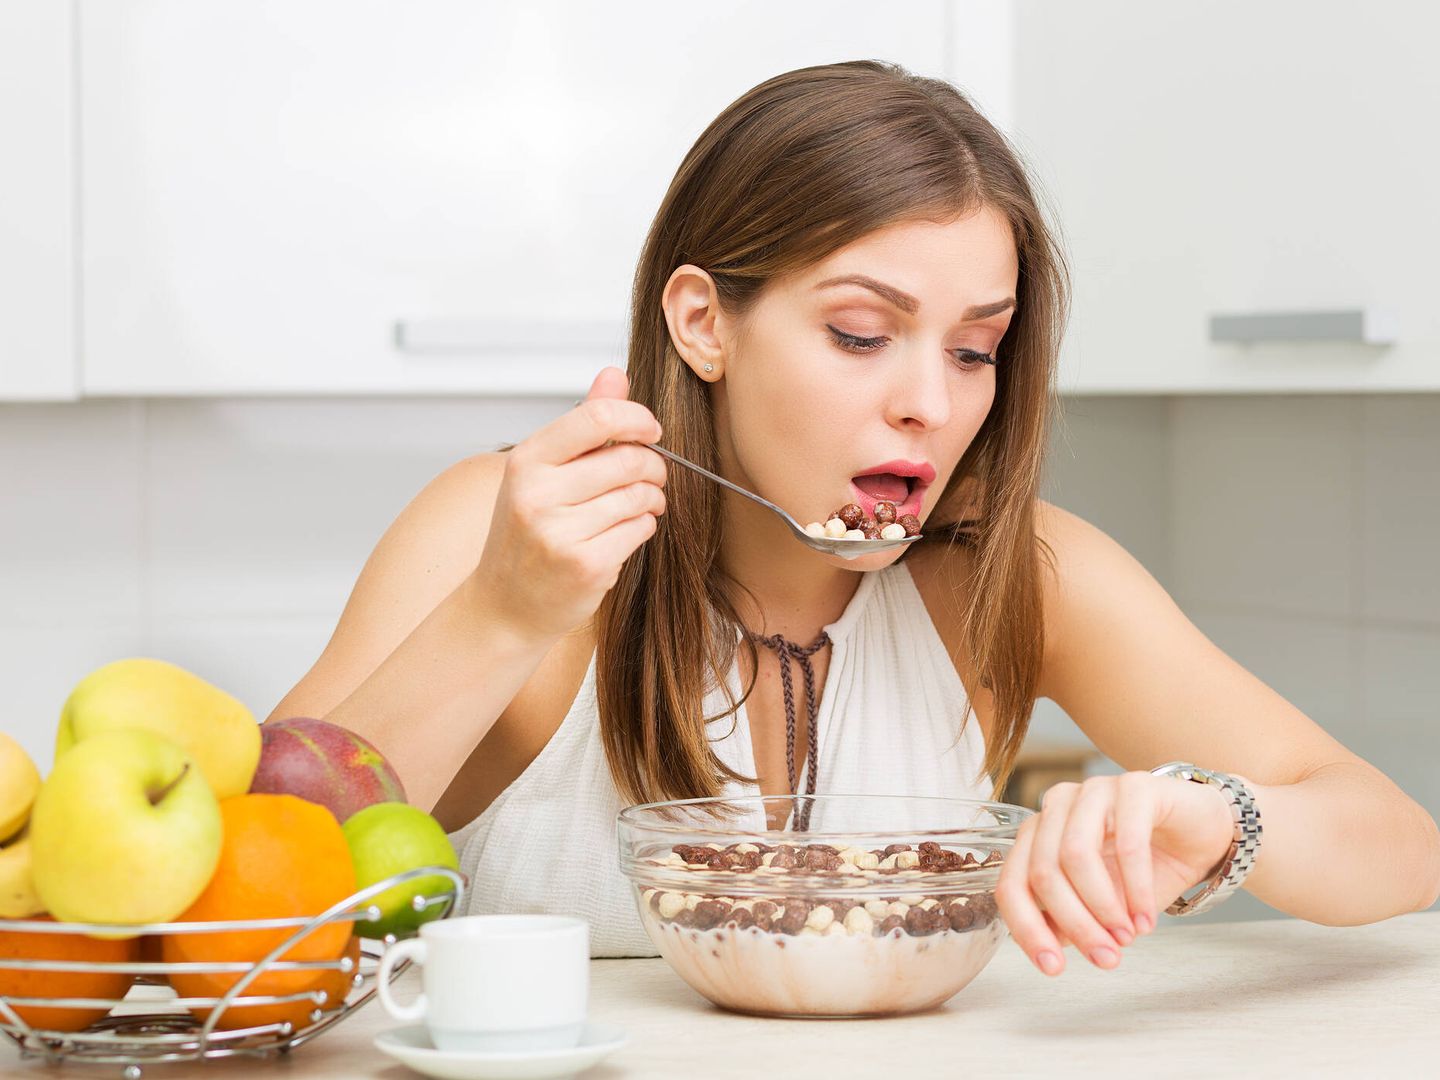 Comer deprisa o una mala alimentación pueden favorecer el desequilibrio en la microbiota intestinal. (iStock)